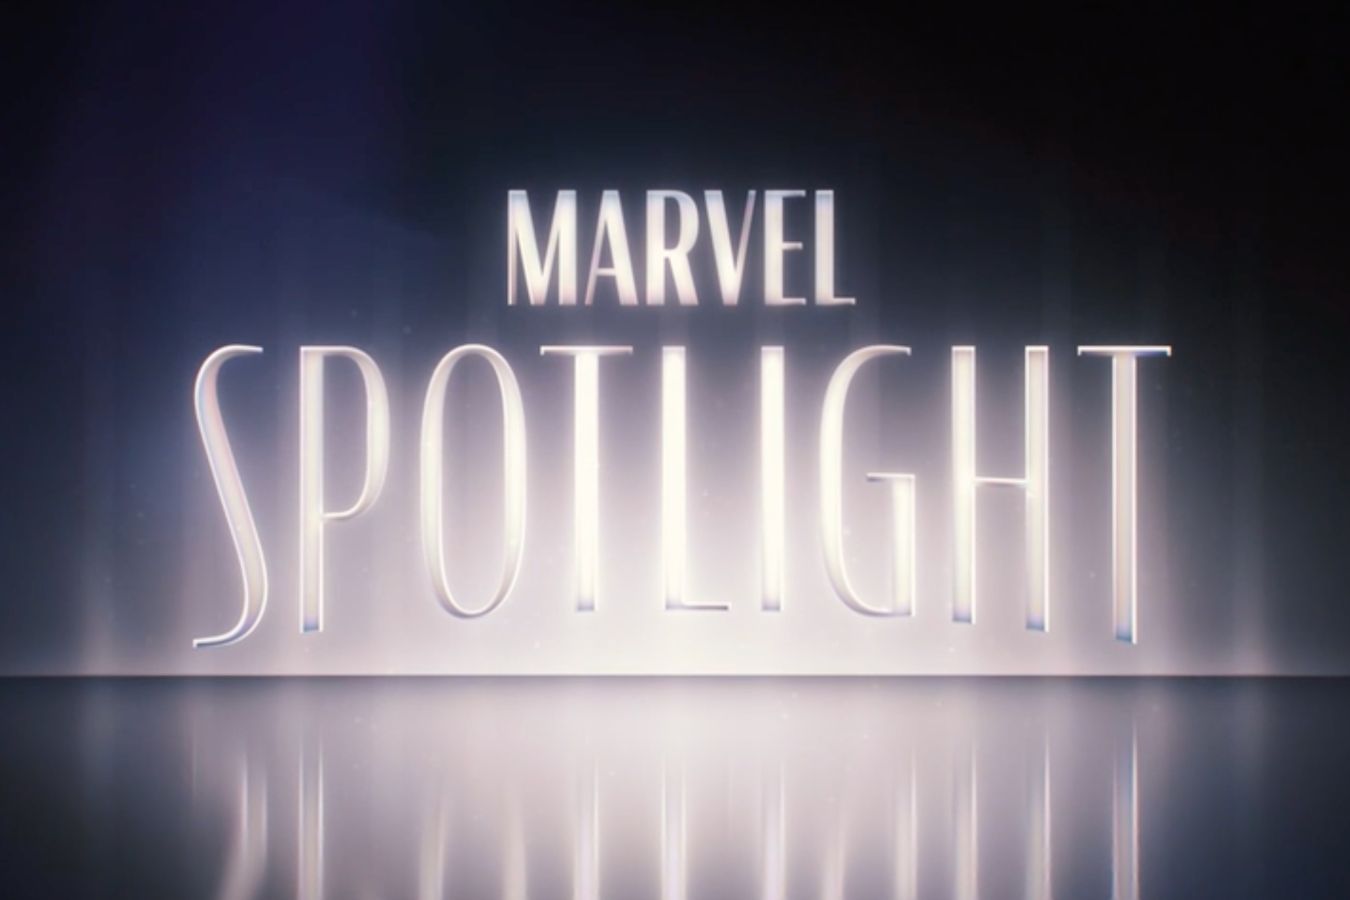 Сериал «Чудо-человек» выйдет под брендом Marvel Spotlight и не связан с главной вселенной